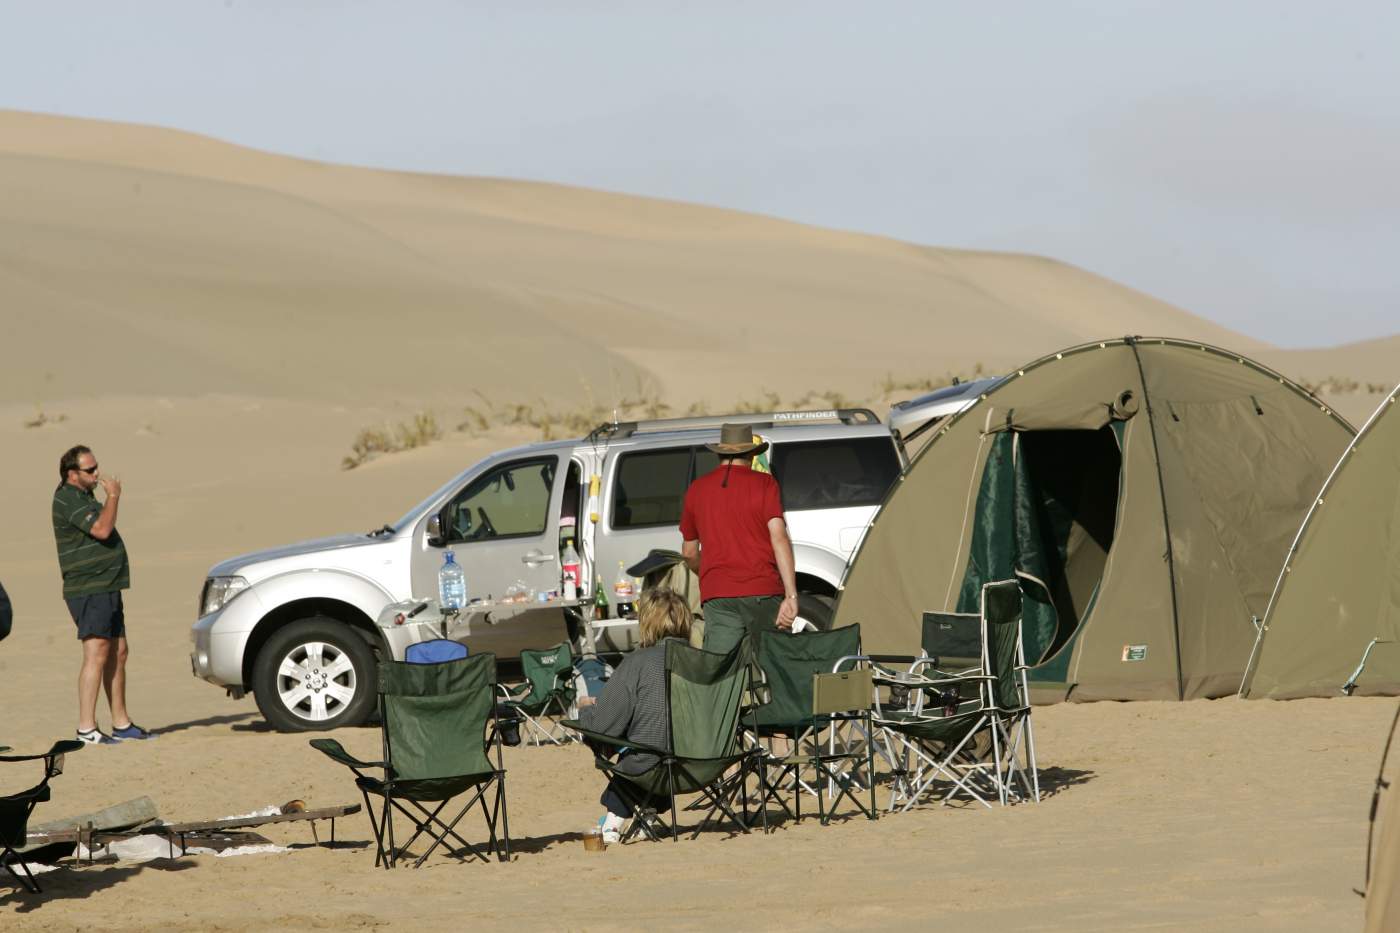 Campingausrüstung für die Afrika 4x4 Off Road reise in Namibia, Tunesien und den Magrebstaaten